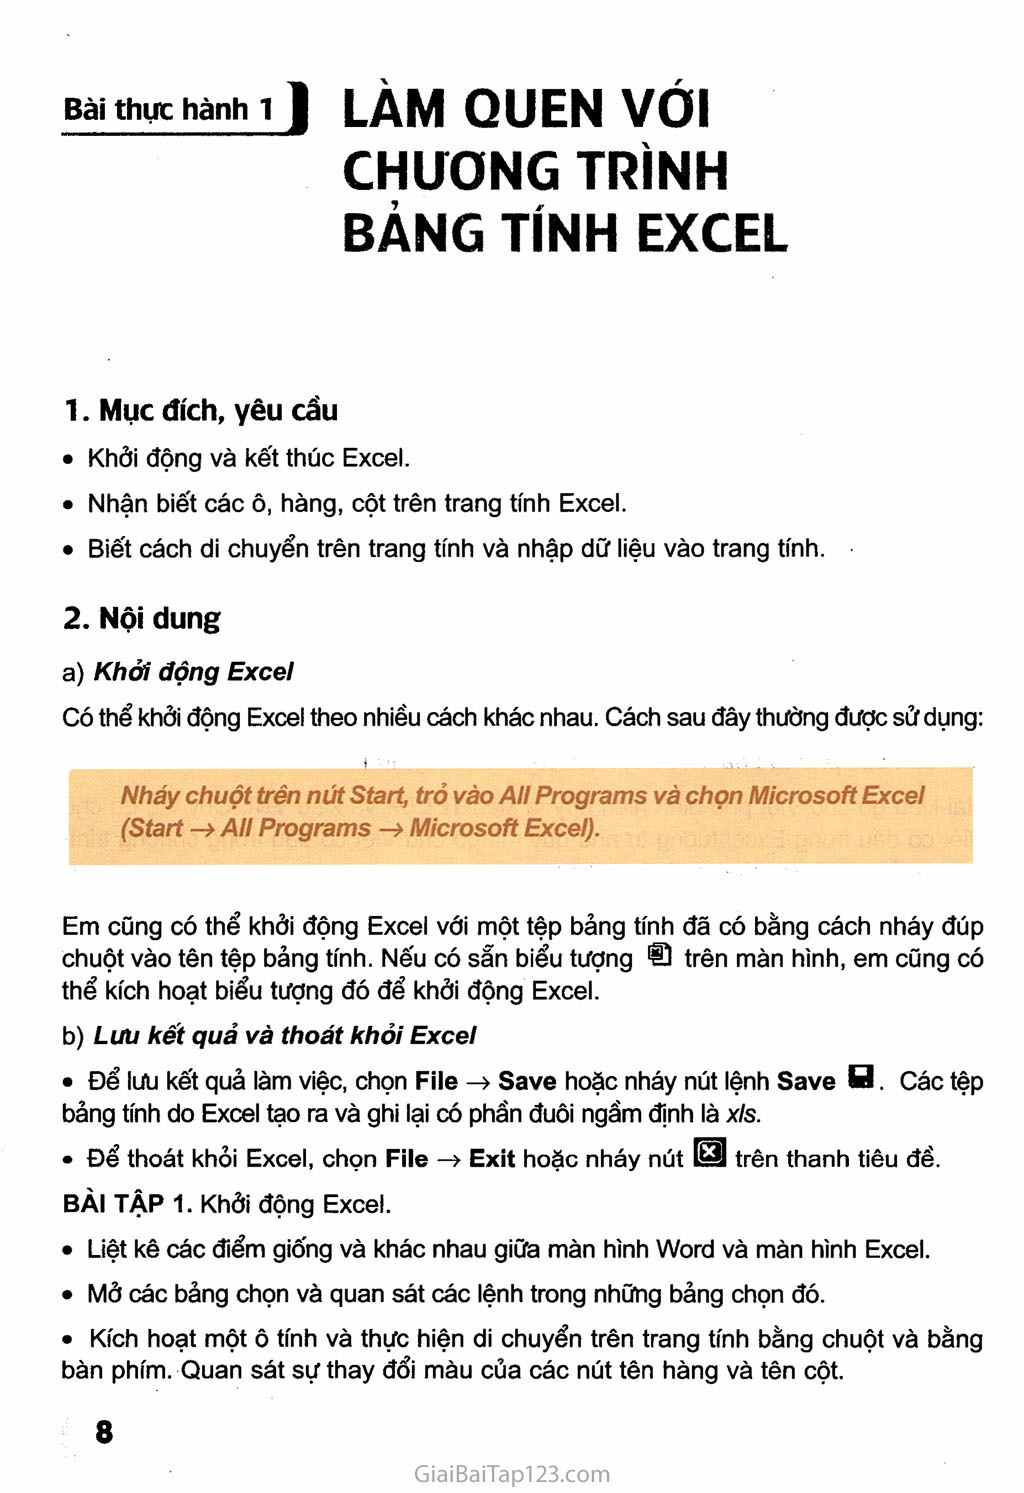 Bài thực hành 1. Làm quen với chương trình bảng tính Excel trang 1